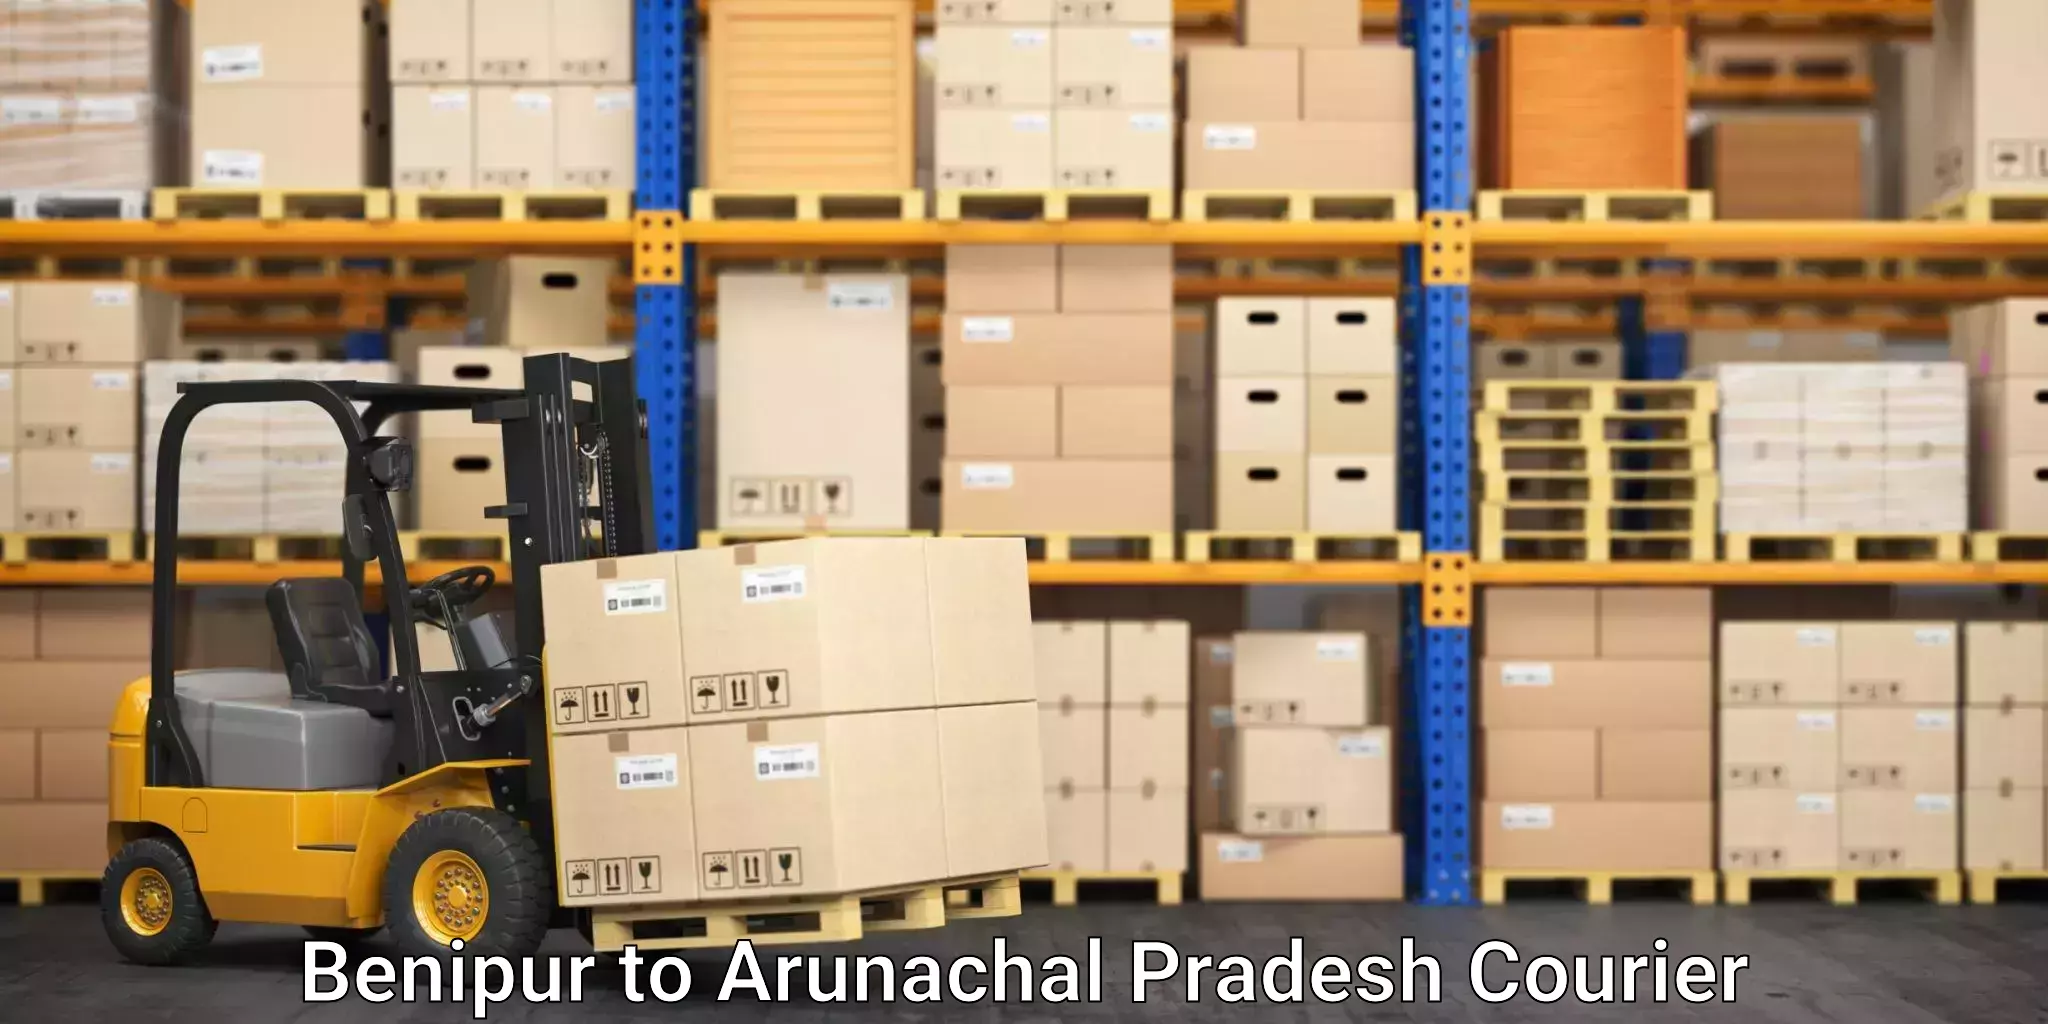 Professional packing services Benipur to Arunachal Pradesh